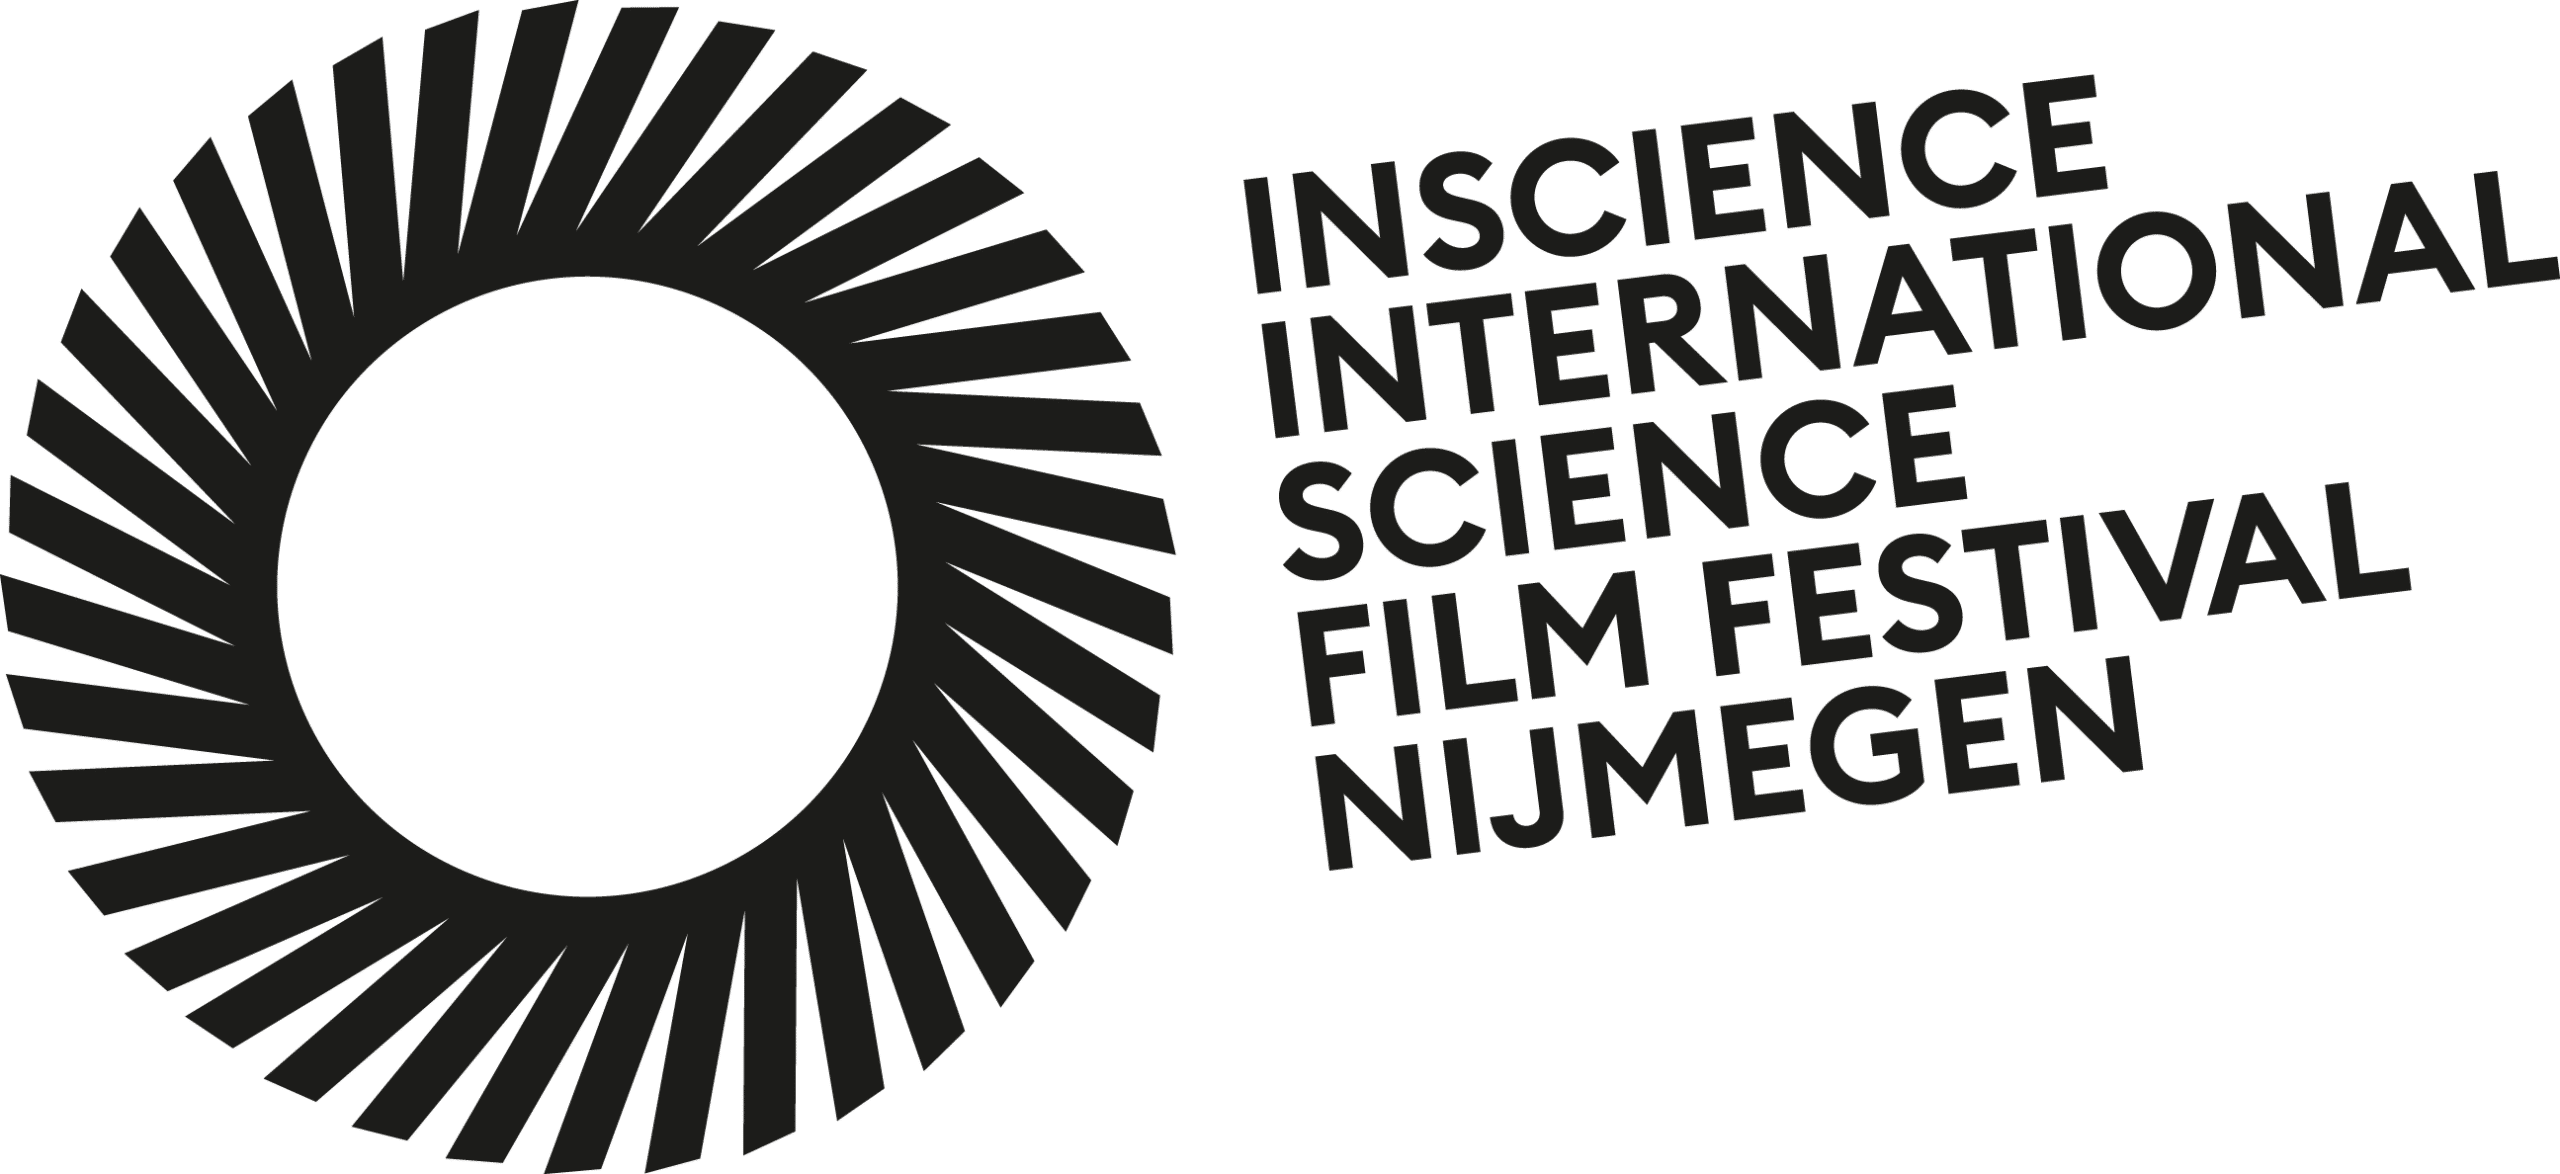 Logo InScience Internationaal Science Film Festival Nijmegen